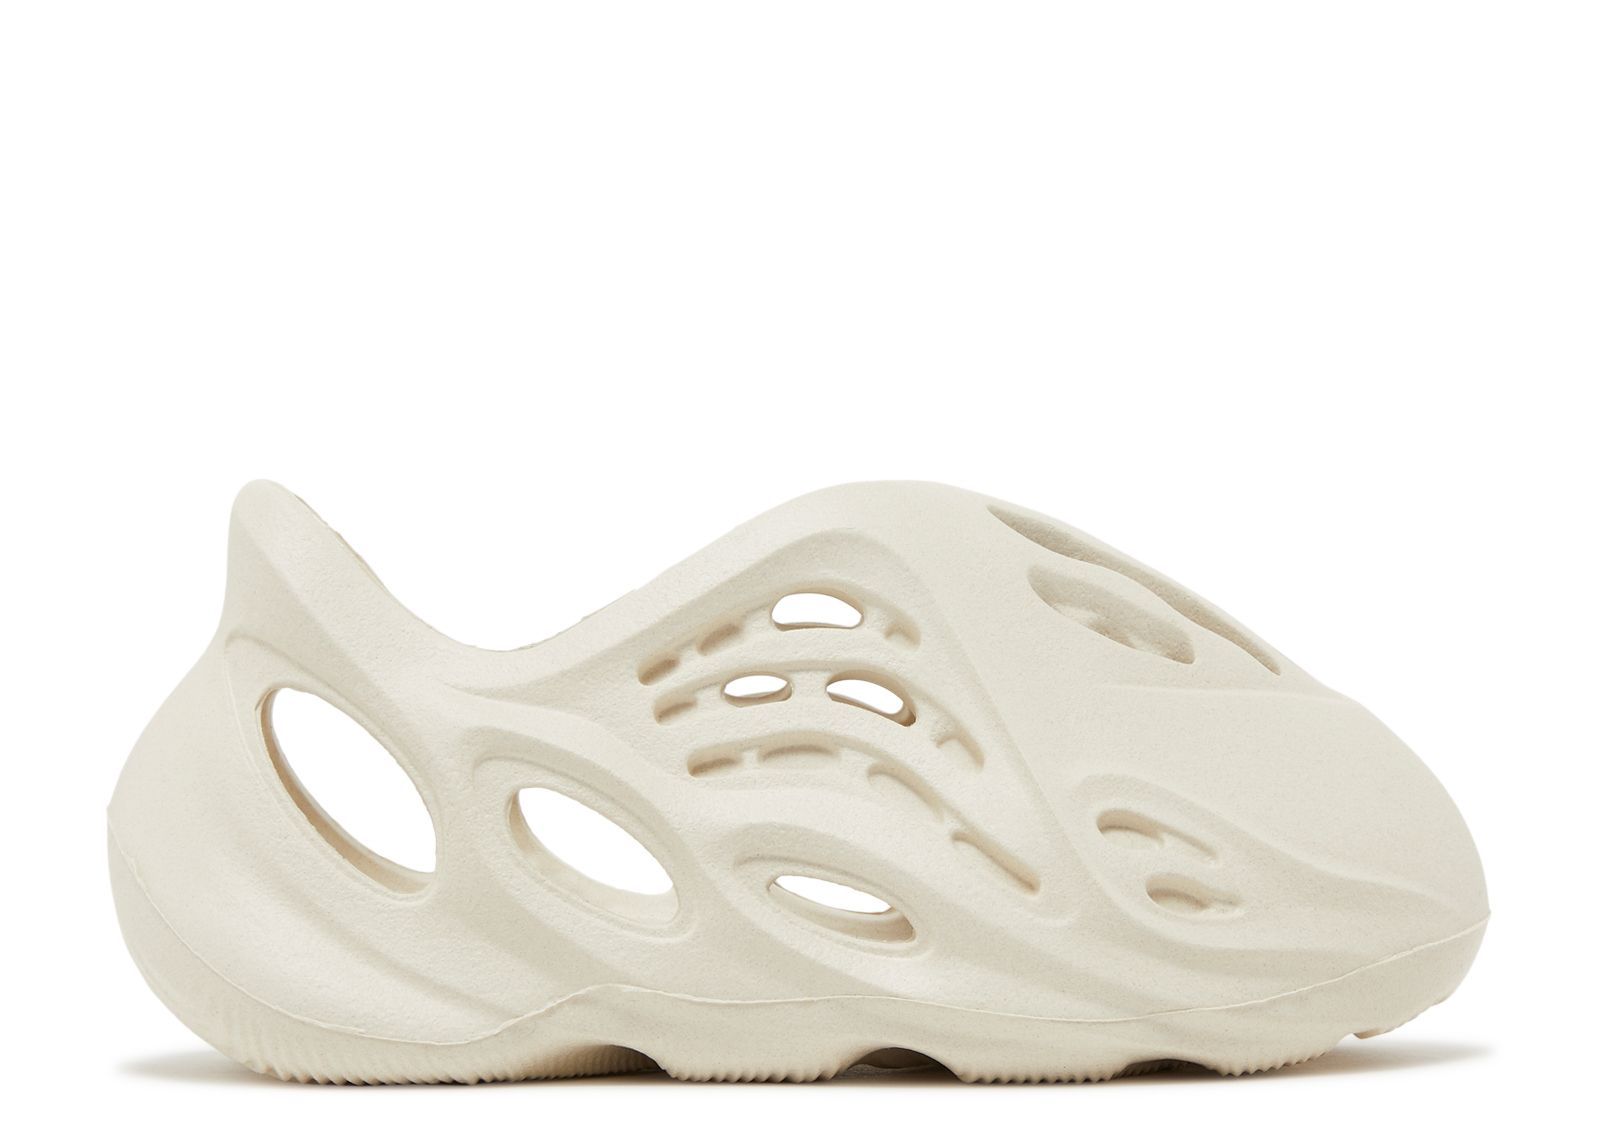 Кроссовки adidas Yeezy Foam Runner Kids 'Sand', кремовый